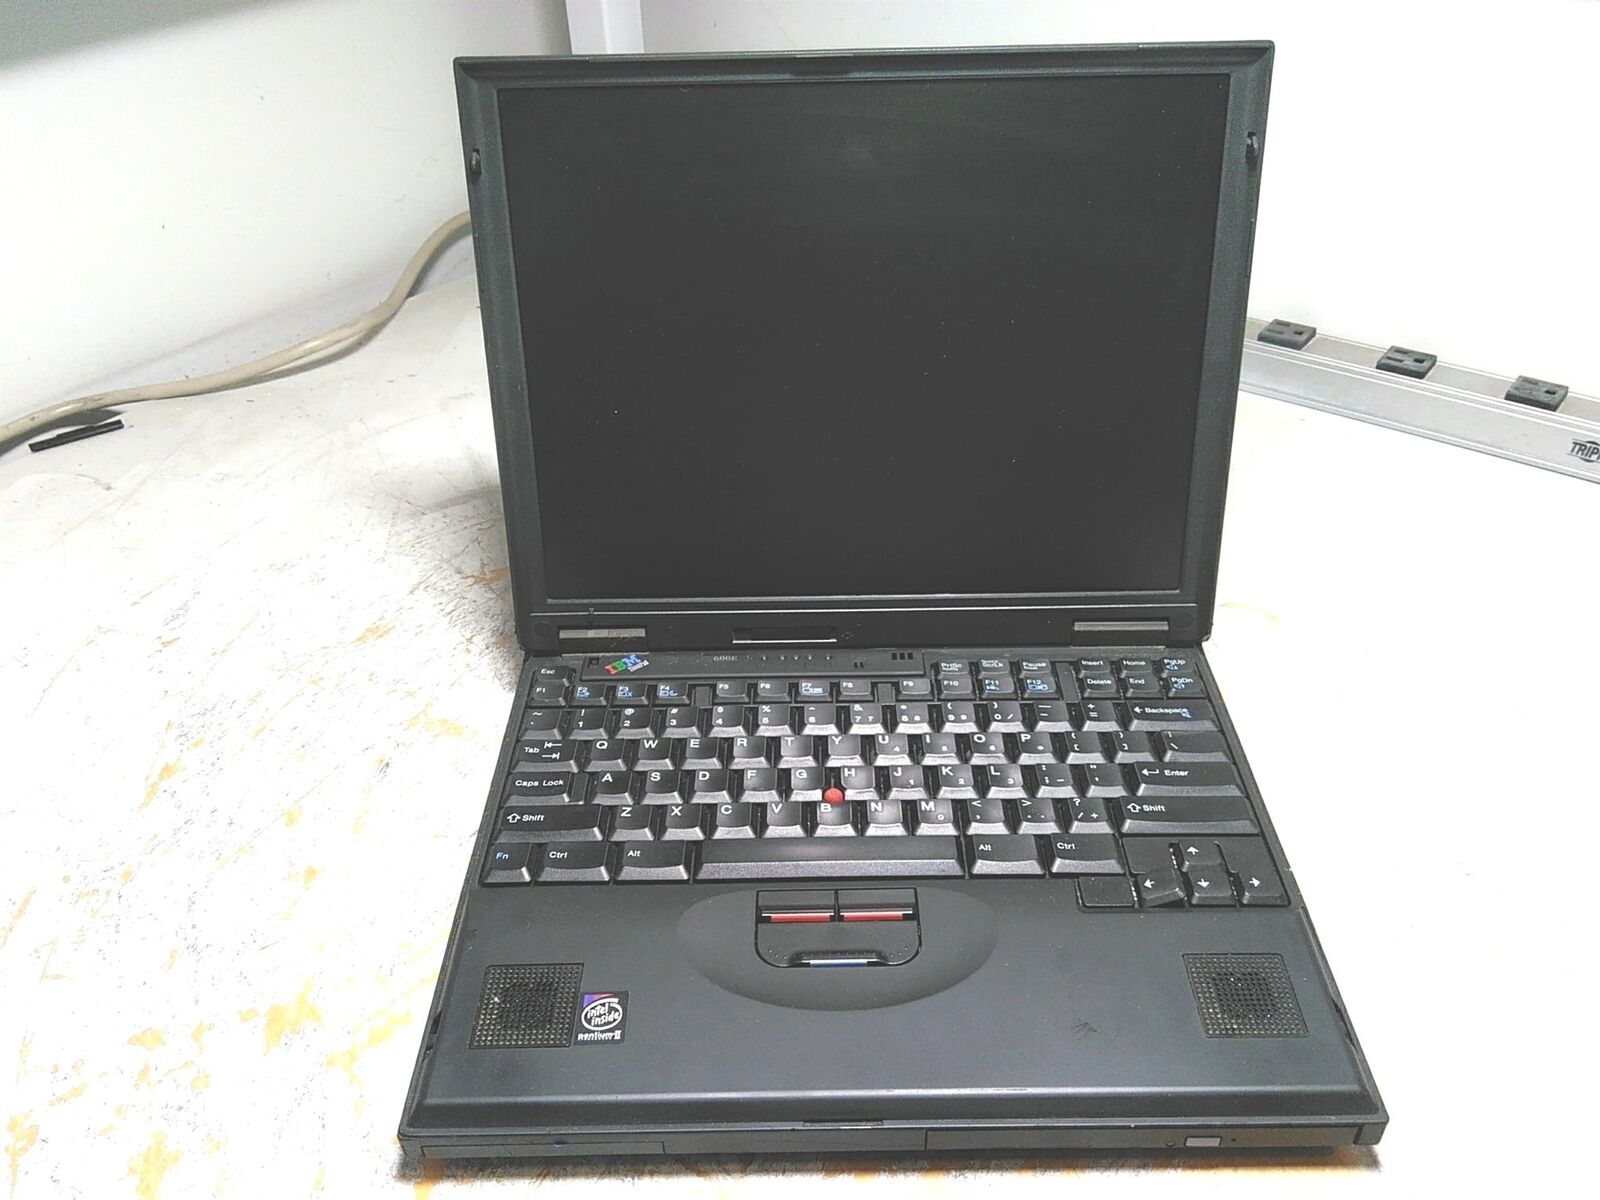 IBM ThinkPad 600E 13